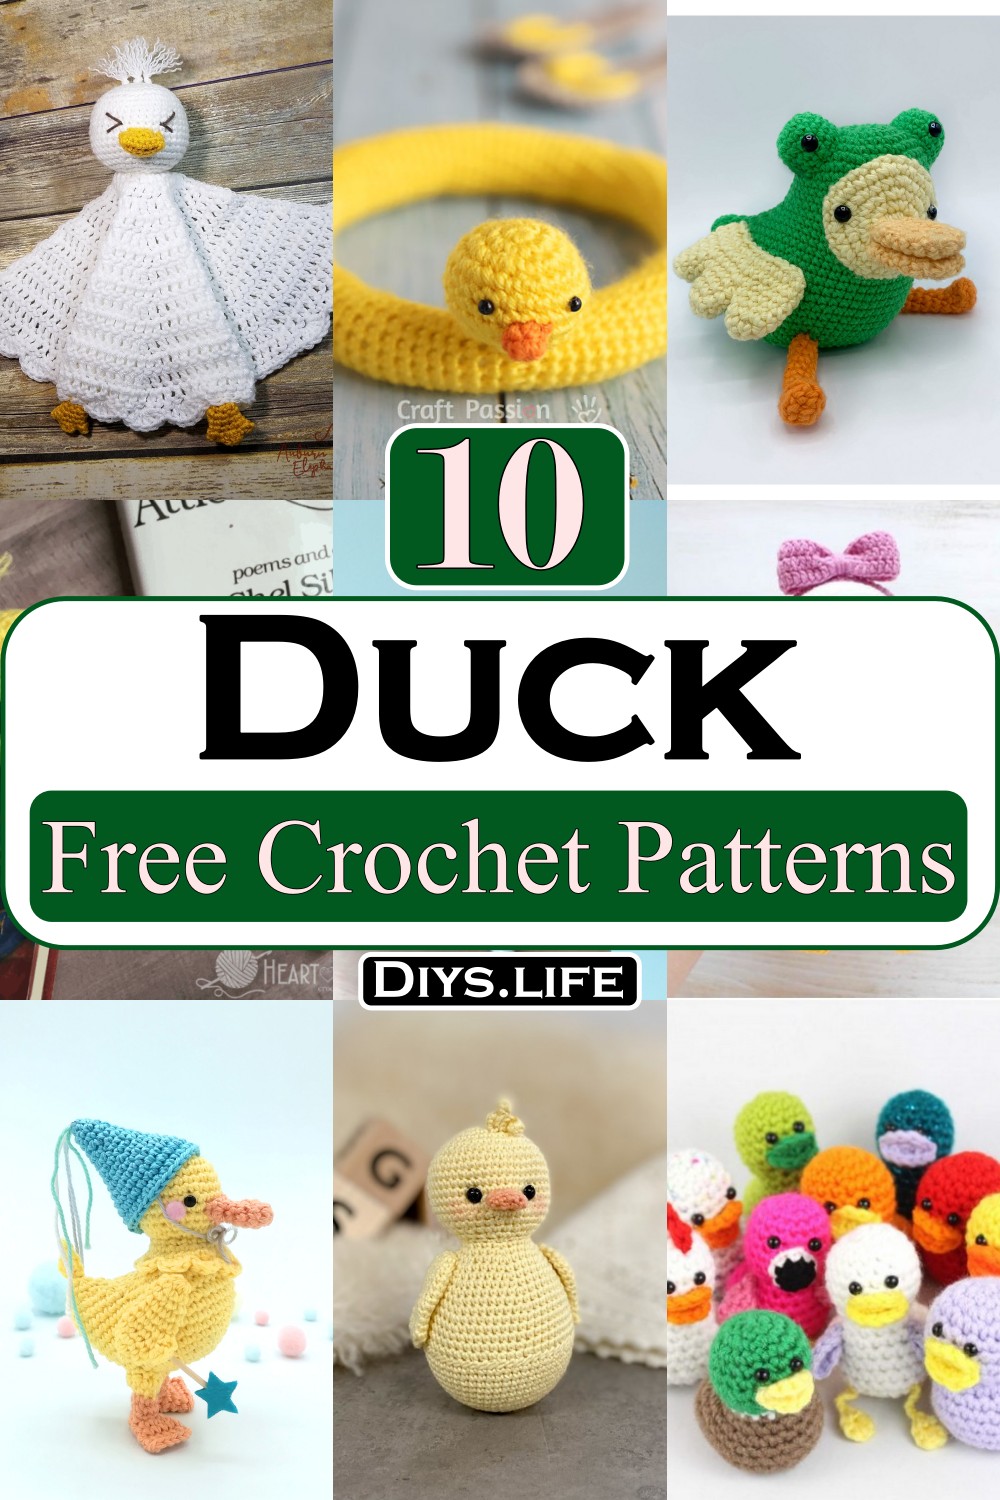 Crochet Duck patterns